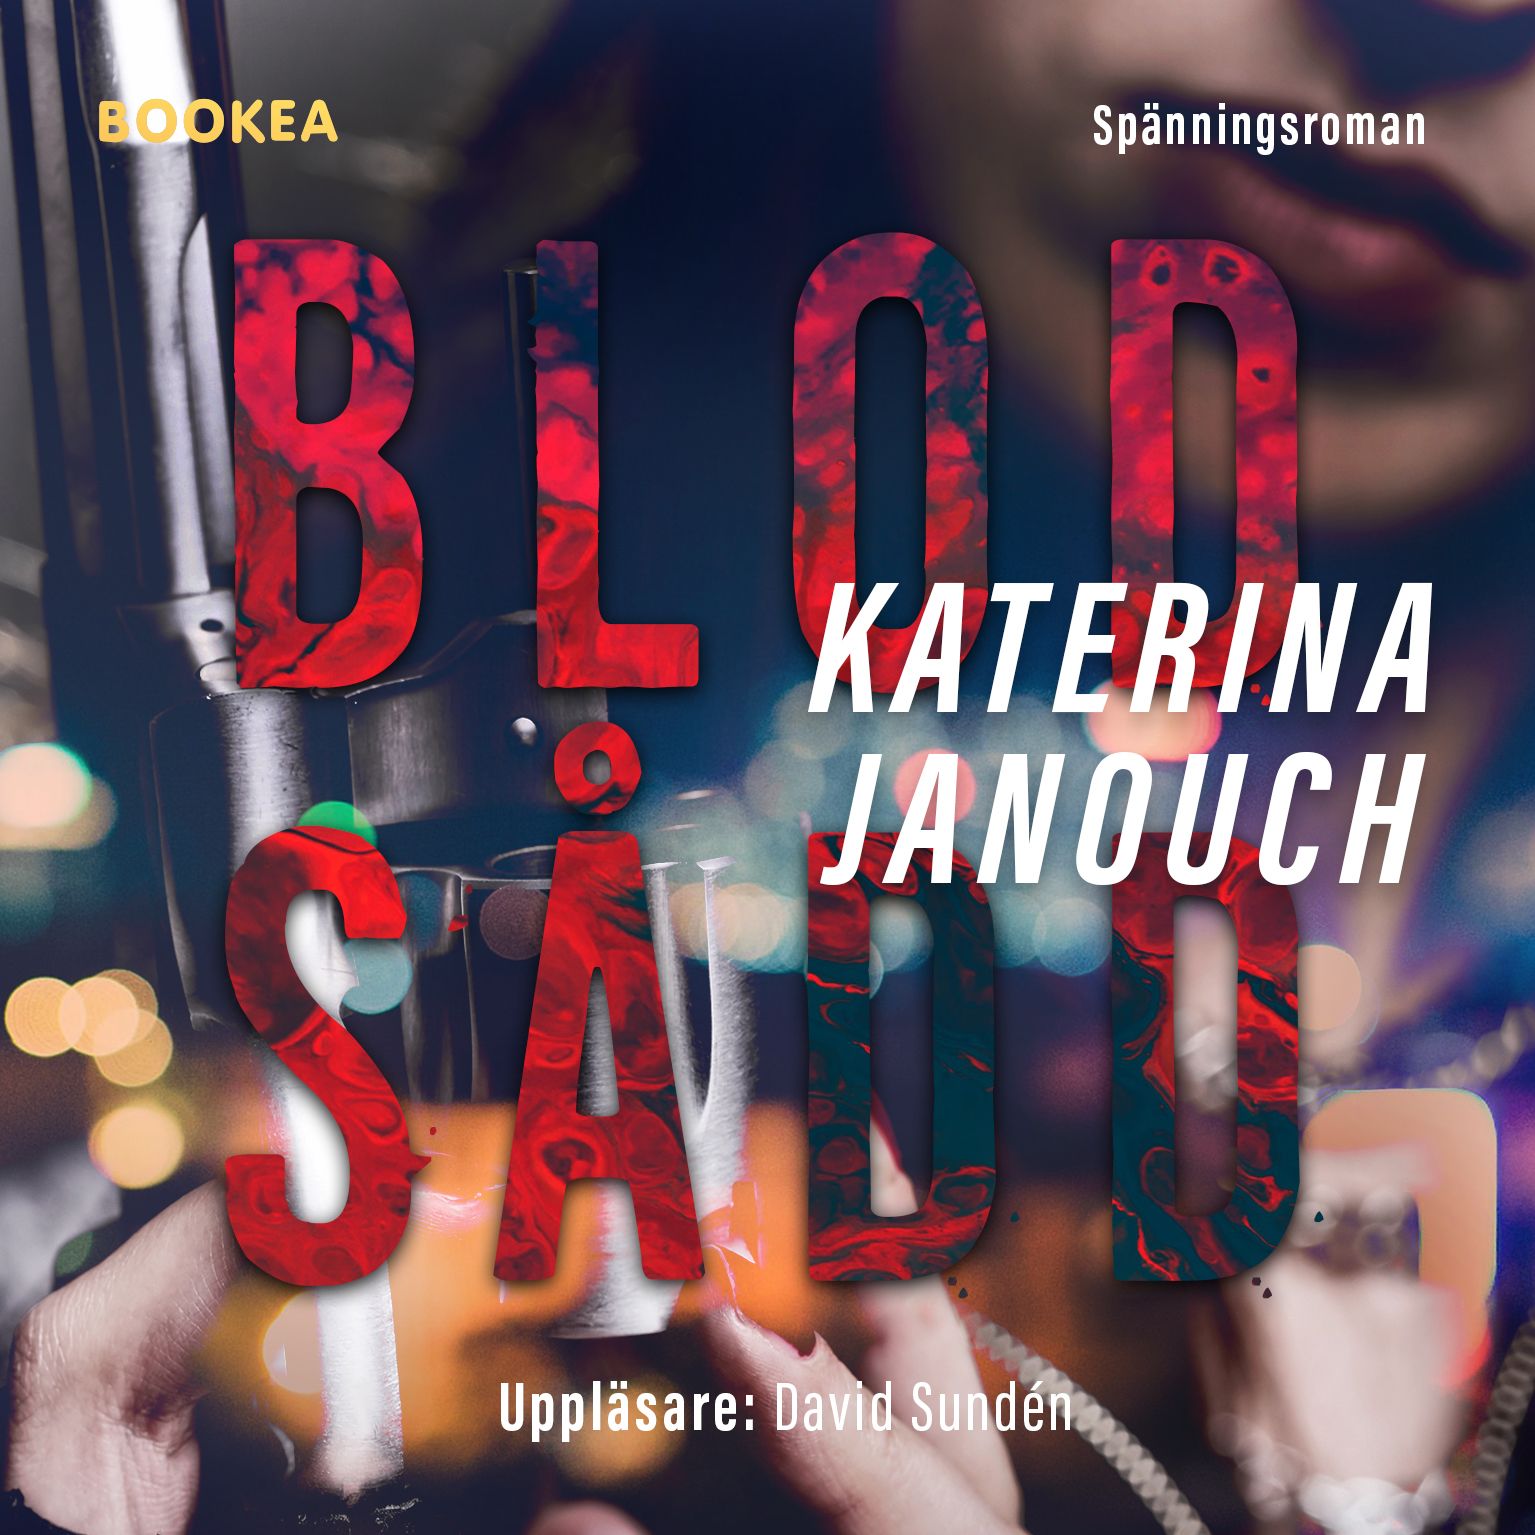 Blodsådd, audiobook by Katerina Janouch